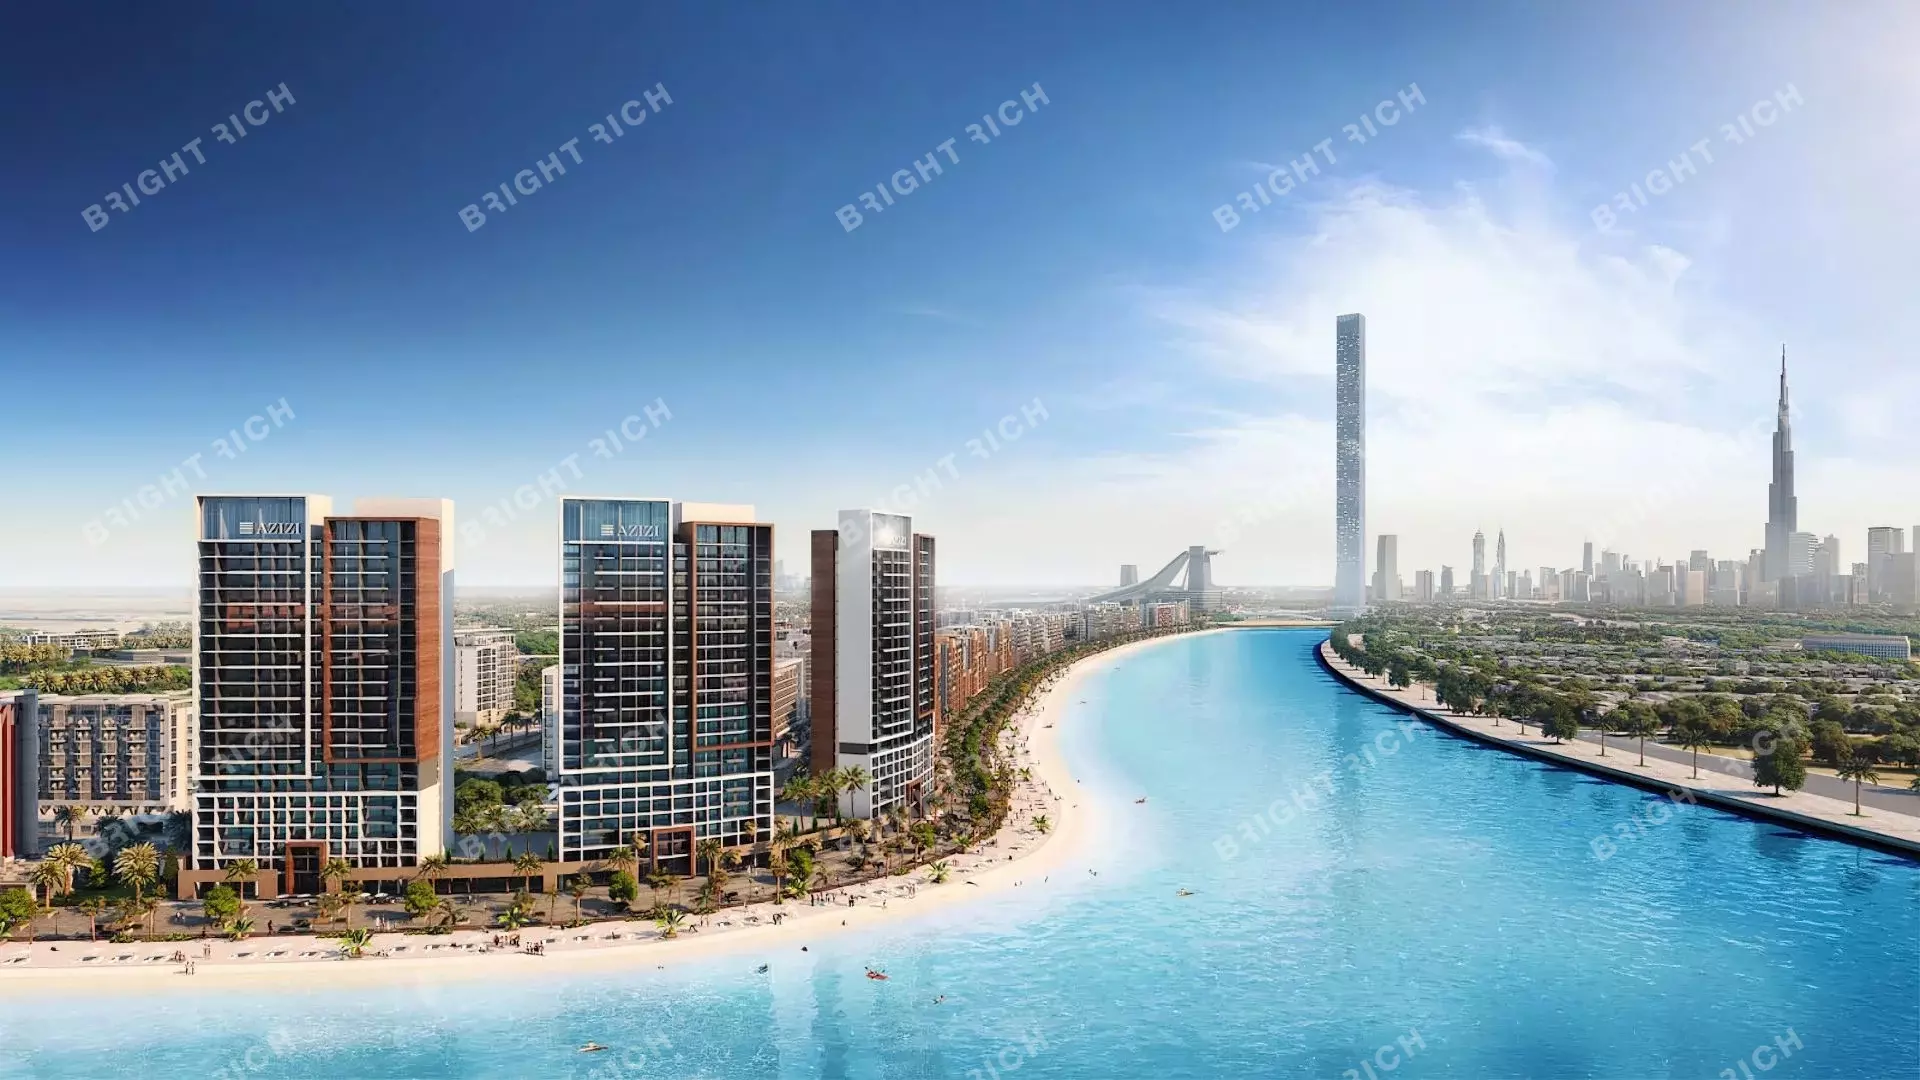 Azizi Riviera Building 8, apart complex in Dubai - 0